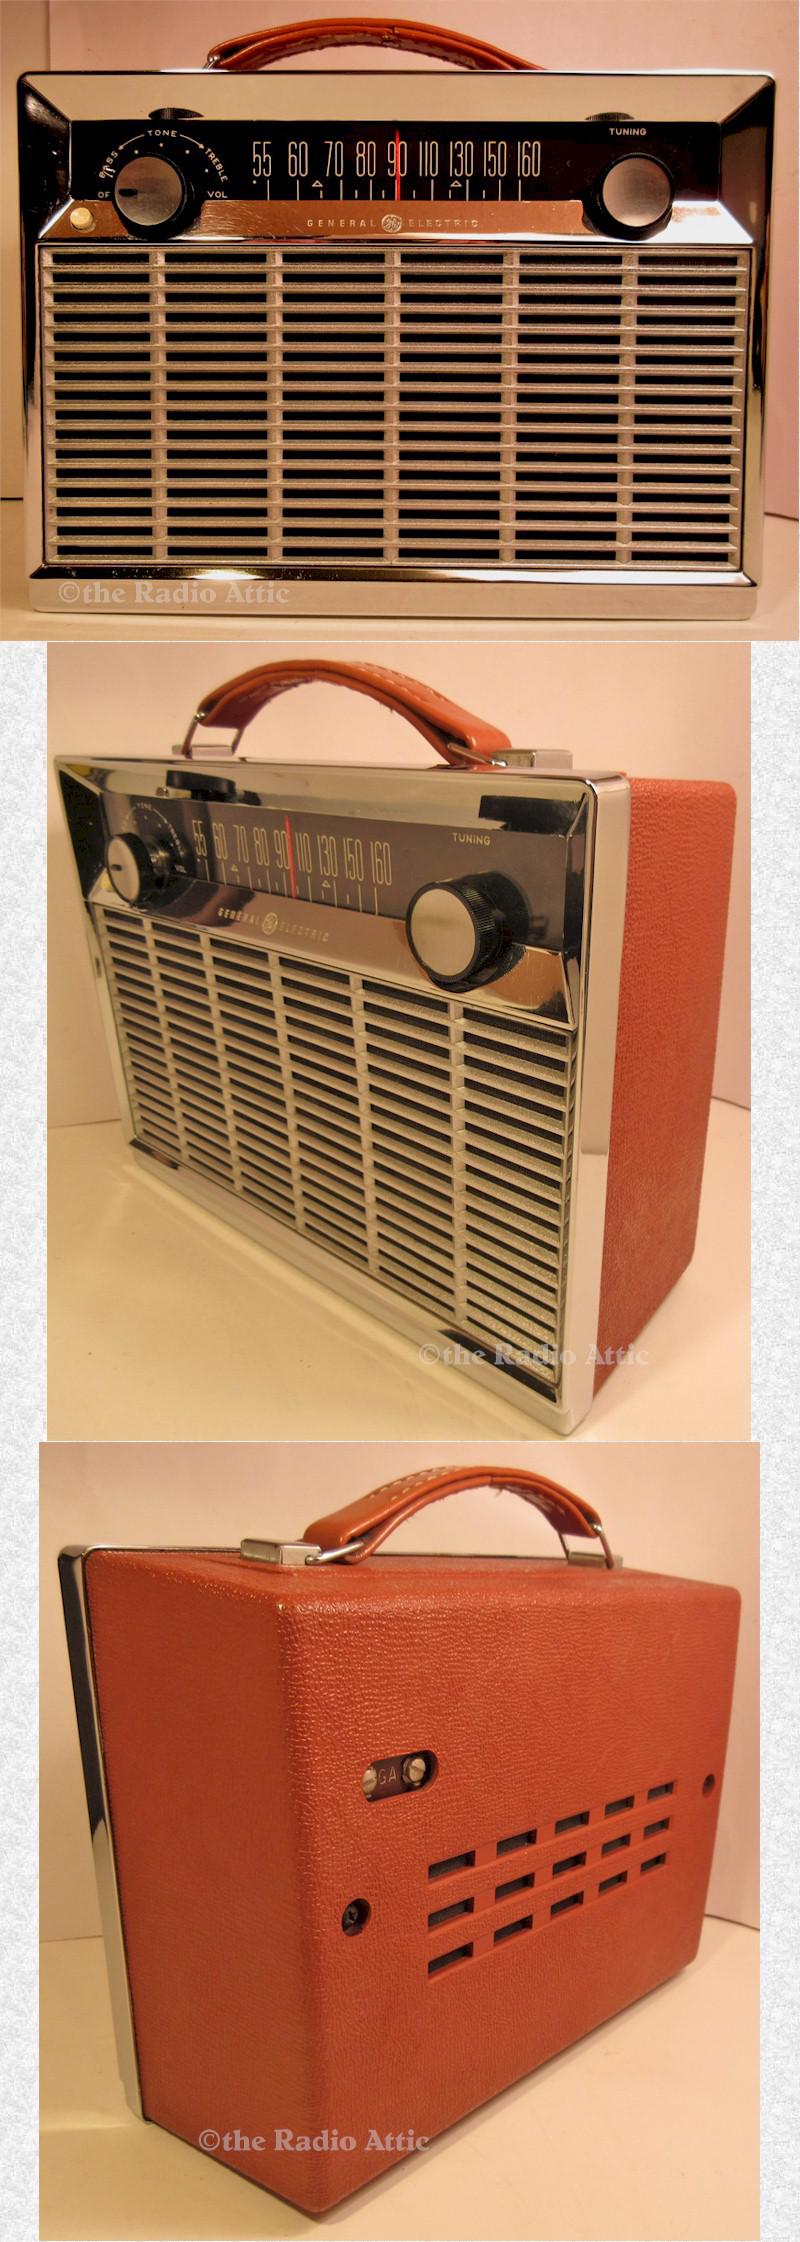 General Electric P780E "Super Radio" (1960)